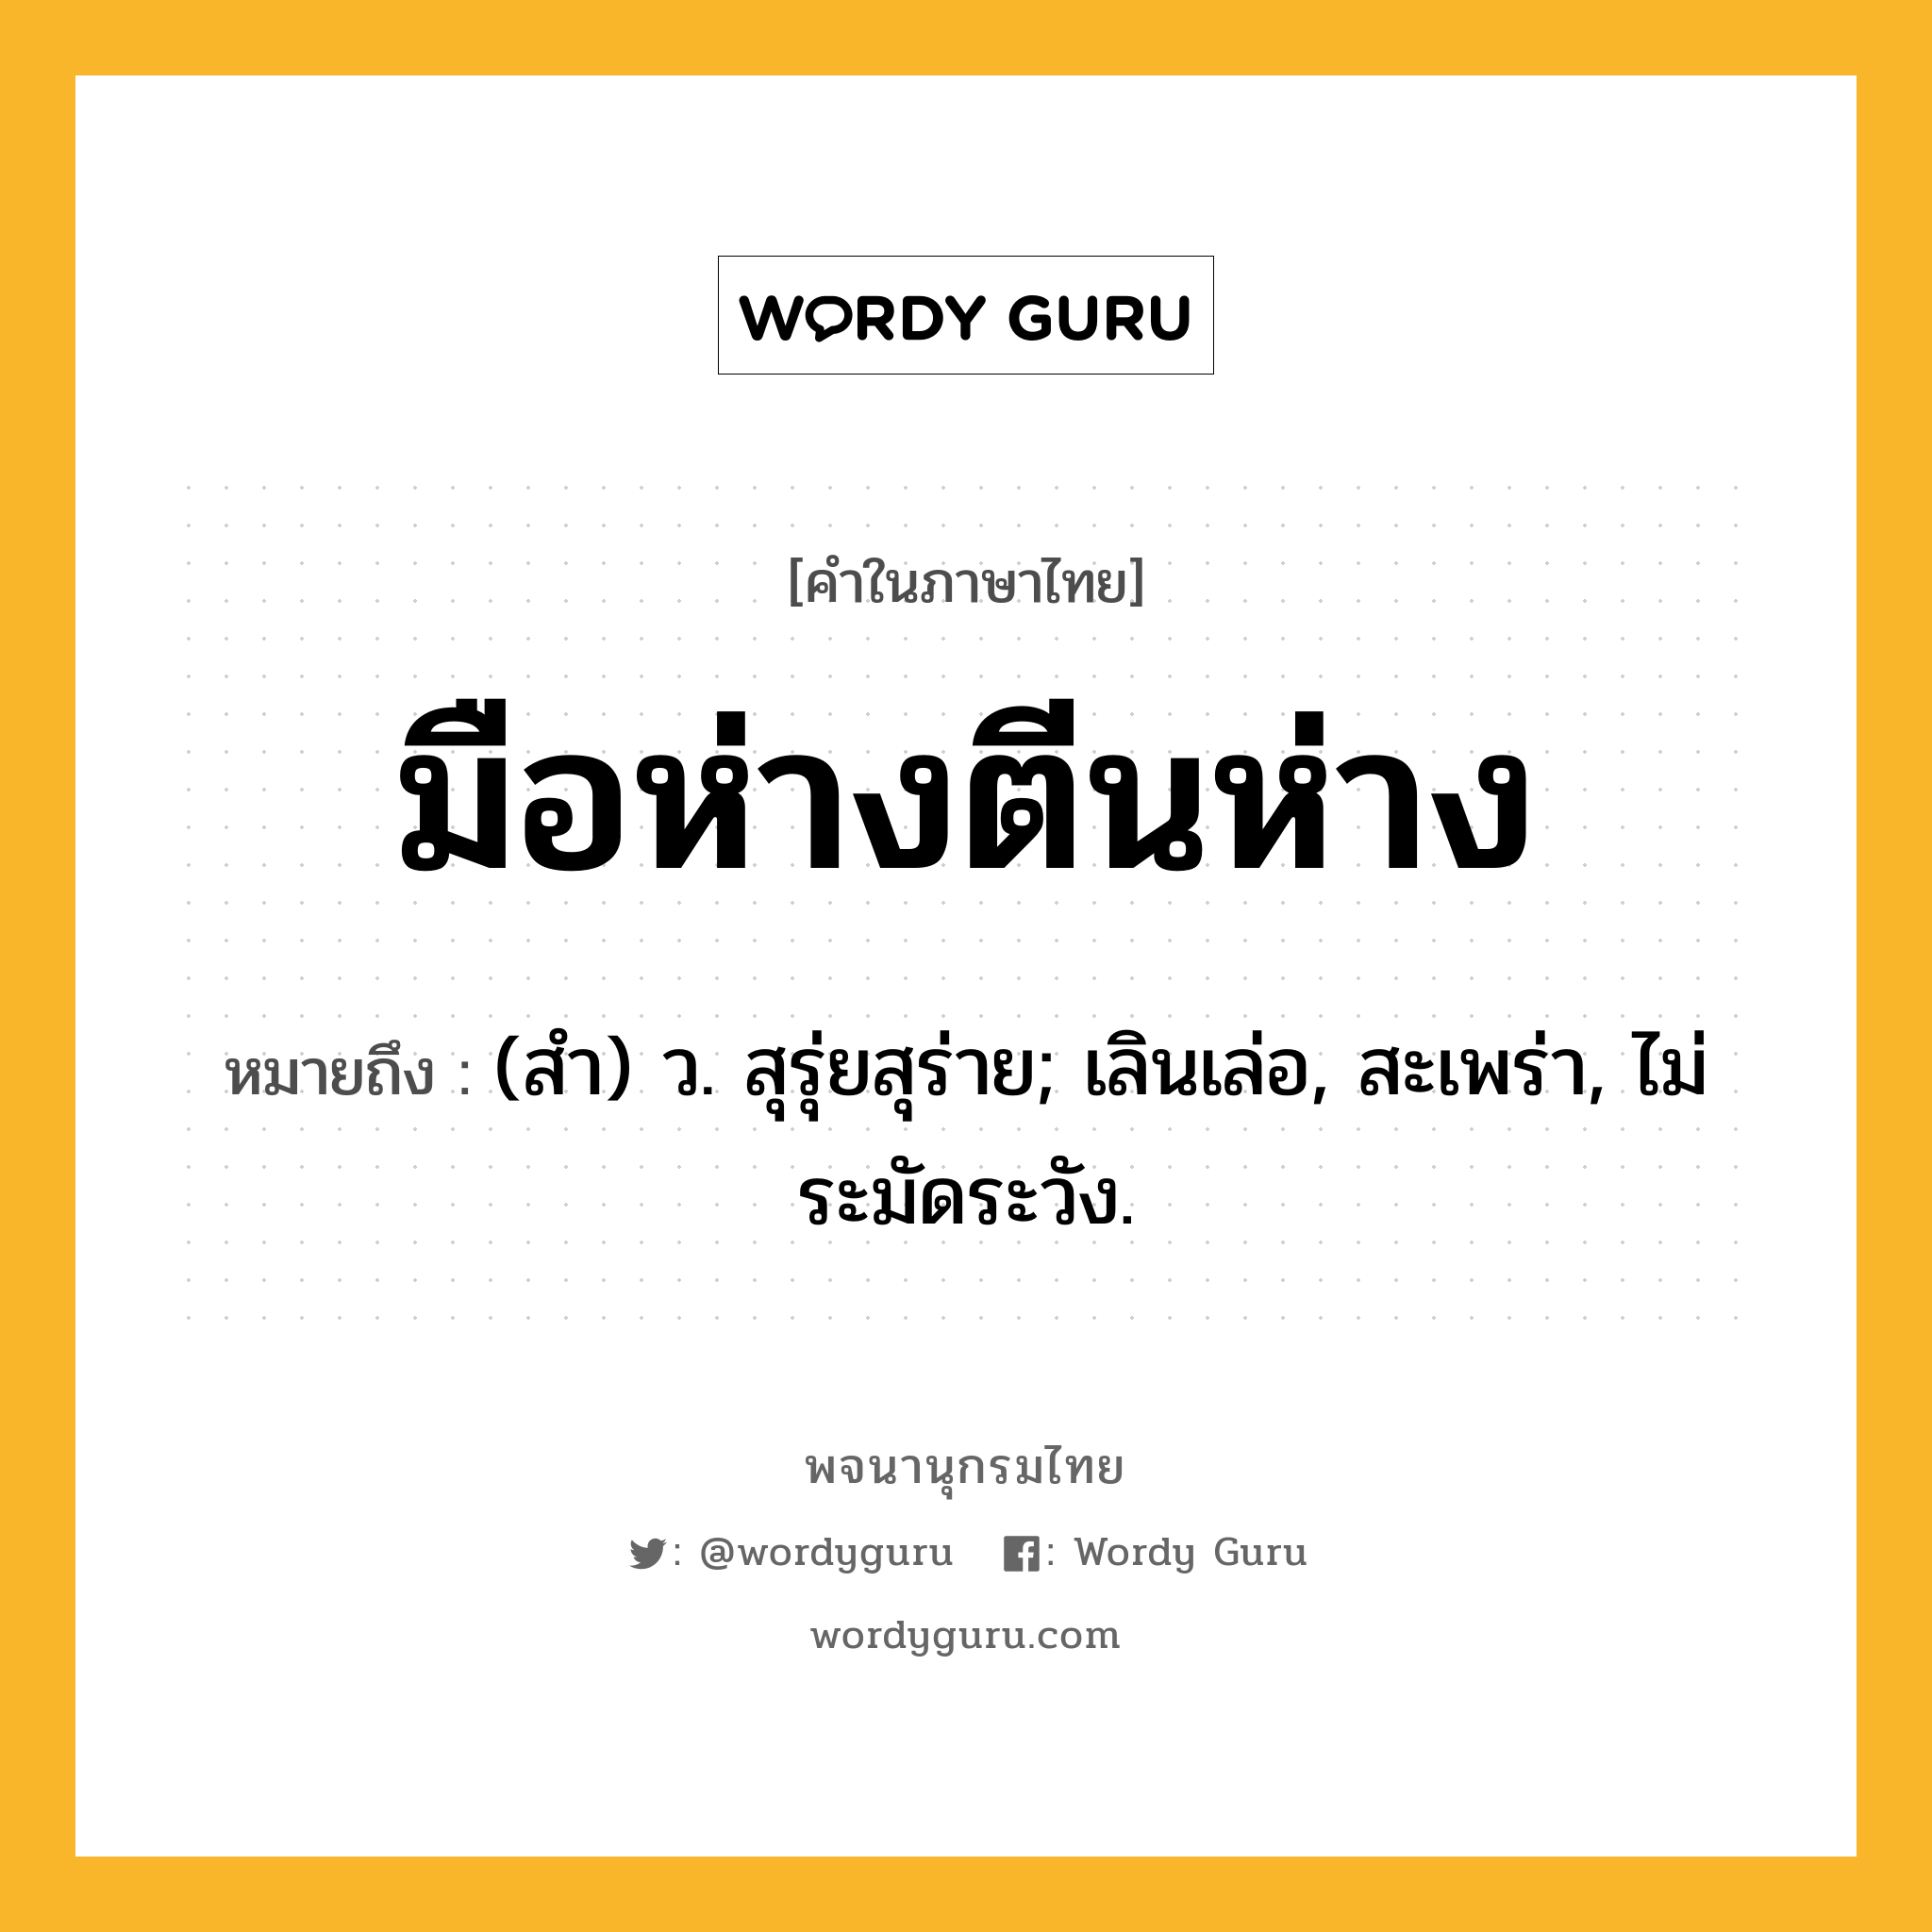 มือห่างตีนห่าง หมายถึงอะไร?, คำในภาษาไทย มือห่างตีนห่าง หมายถึง (สํา) ว. สุรุ่ยสุร่าย; เลินเล่อ, สะเพร่า, ไม่ระมัดระวัง.